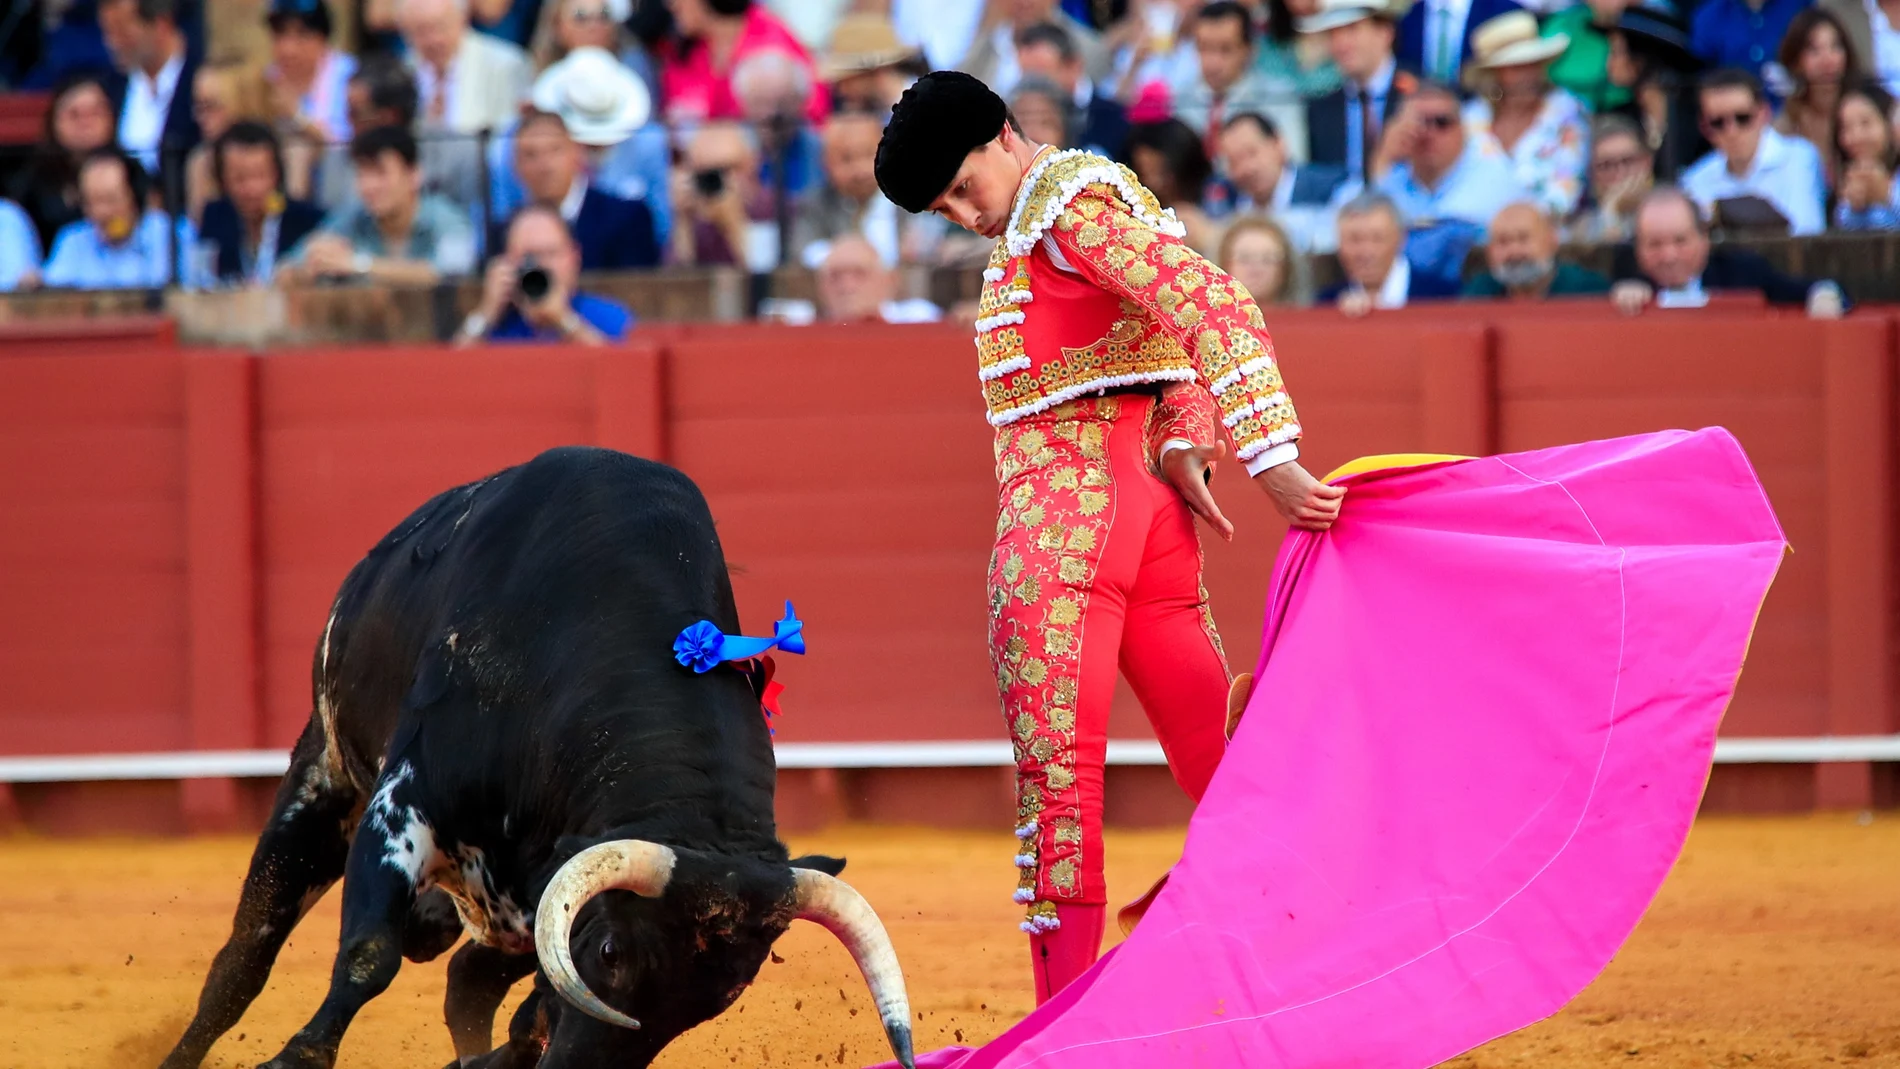 El torero Ginés Marín faena a su primer toro, de la ganadería de El Torero, en la decimotercera corrida de abono de la Feria de Abril esta tarde en la plaza de la Real Maestranza de Sevilla.